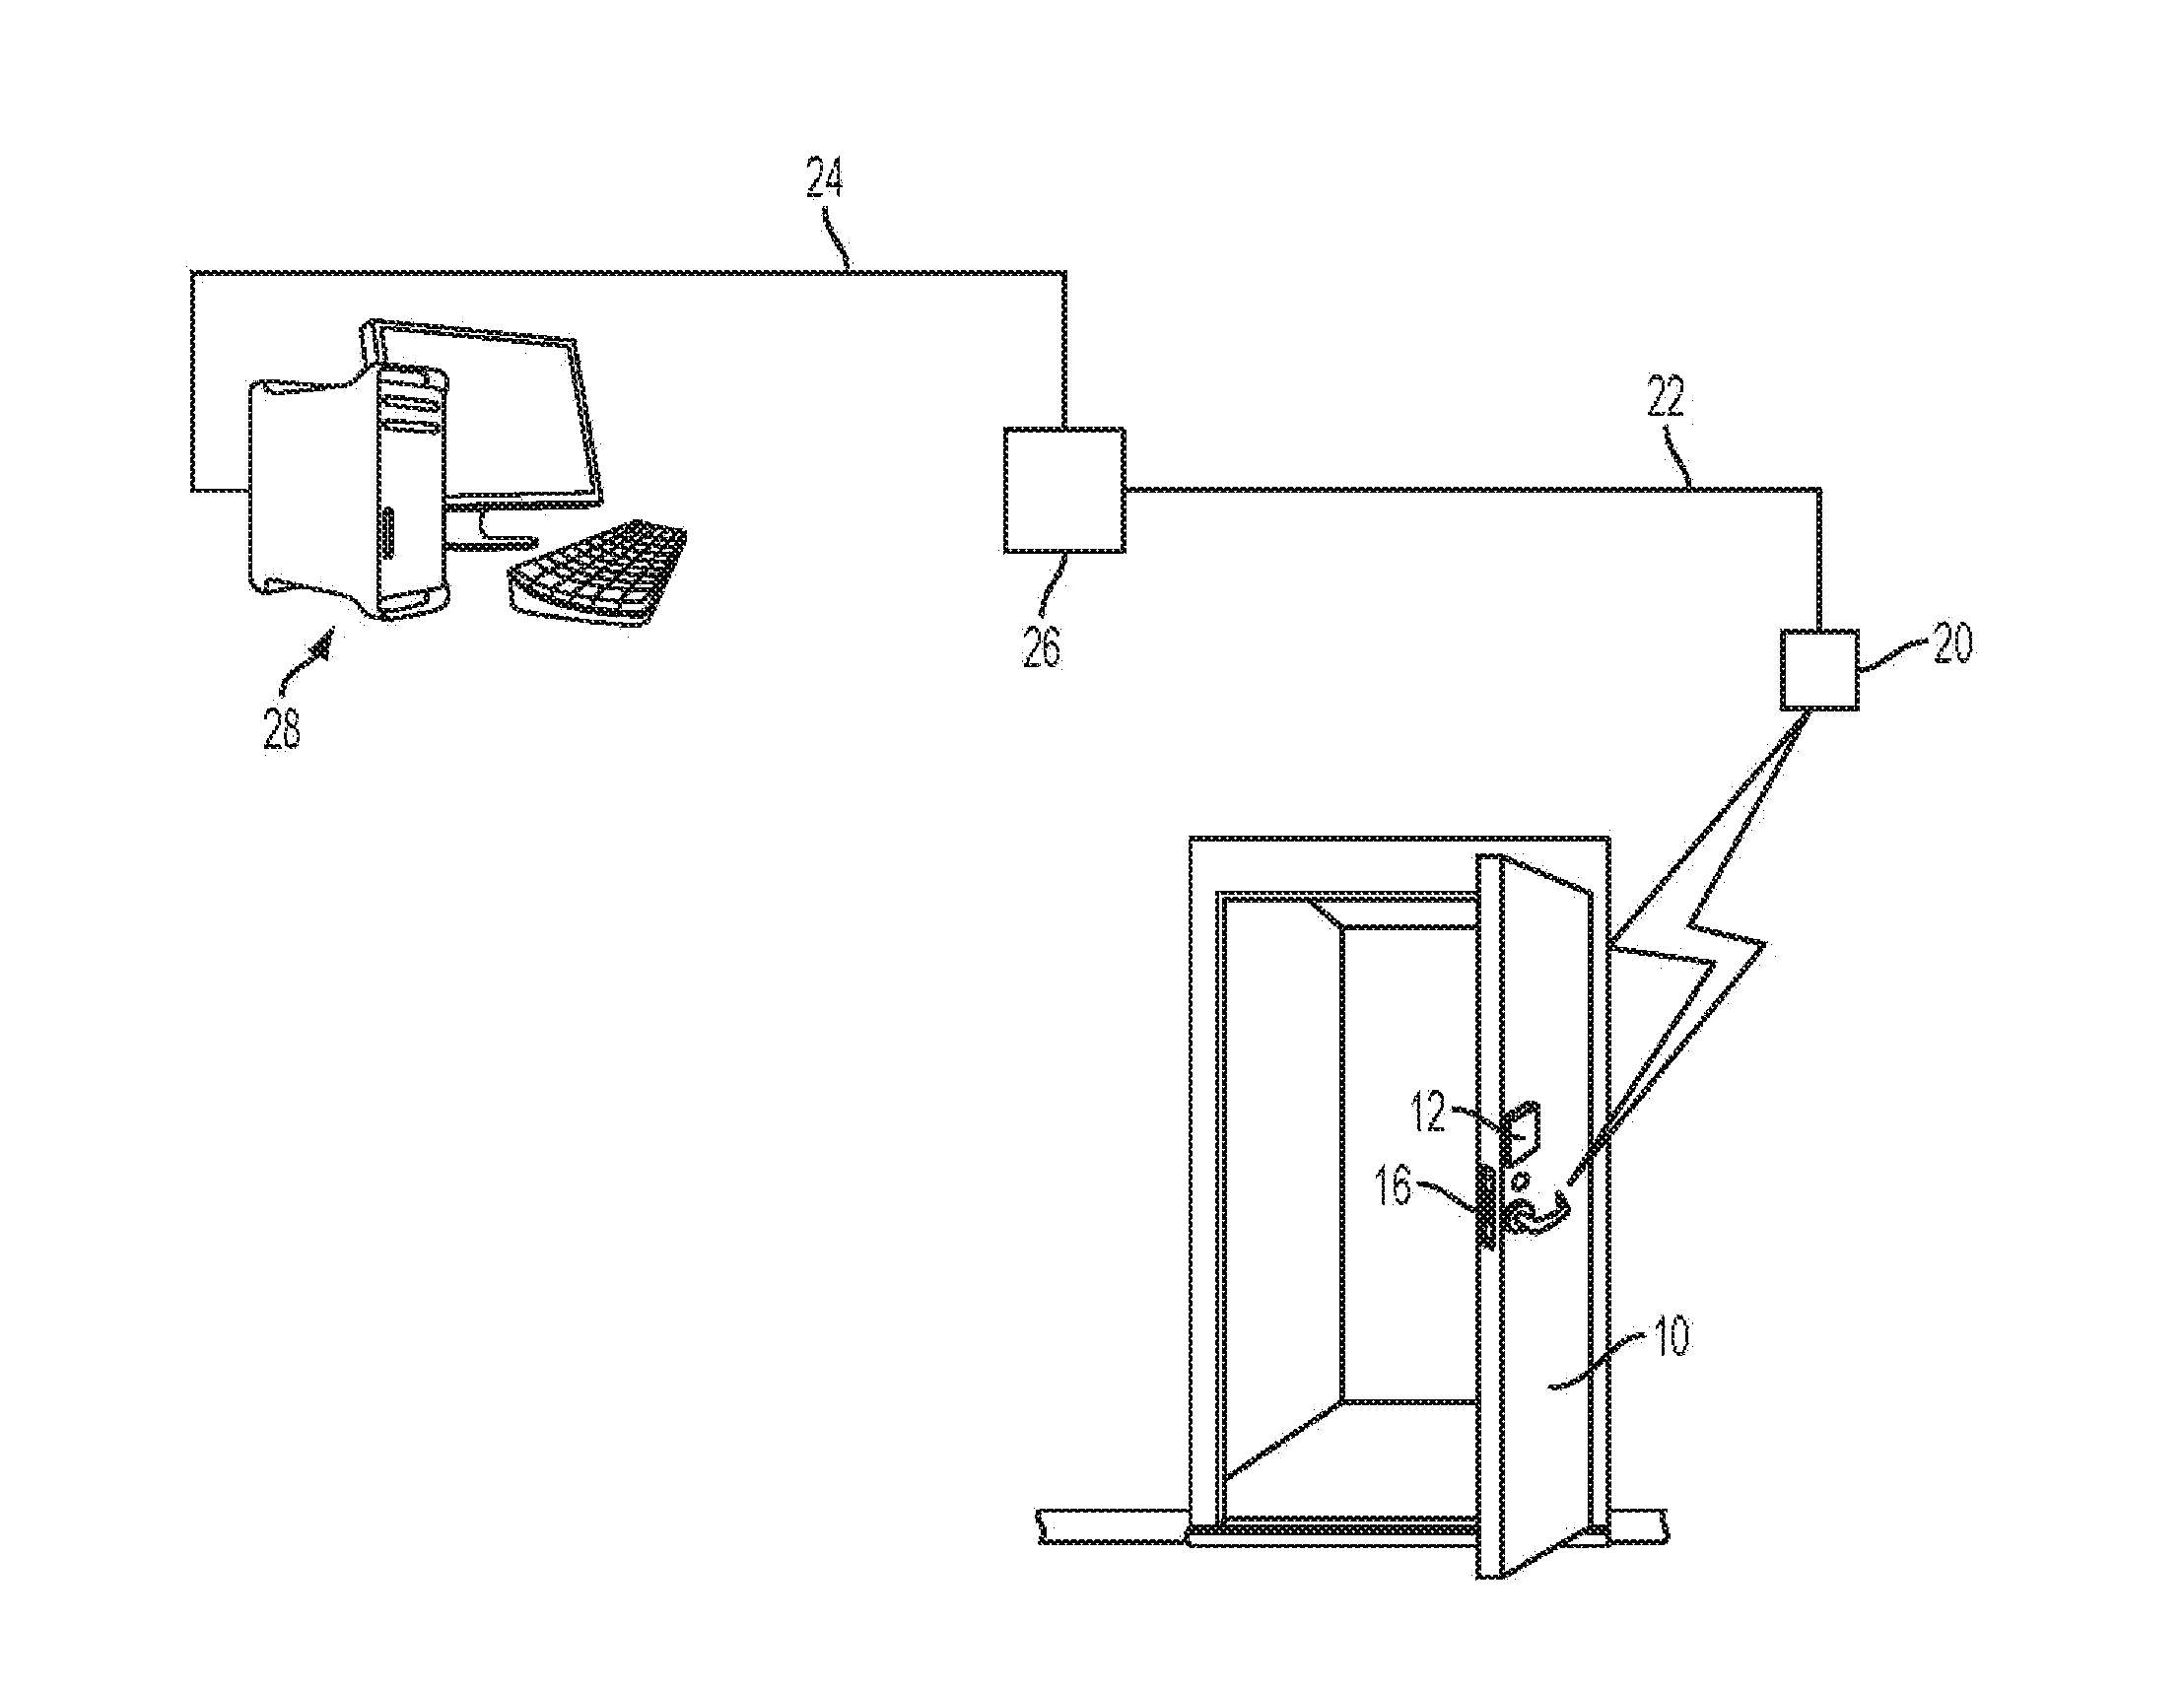 Fire actuated release mechanism to separate electronic door lock from fire door